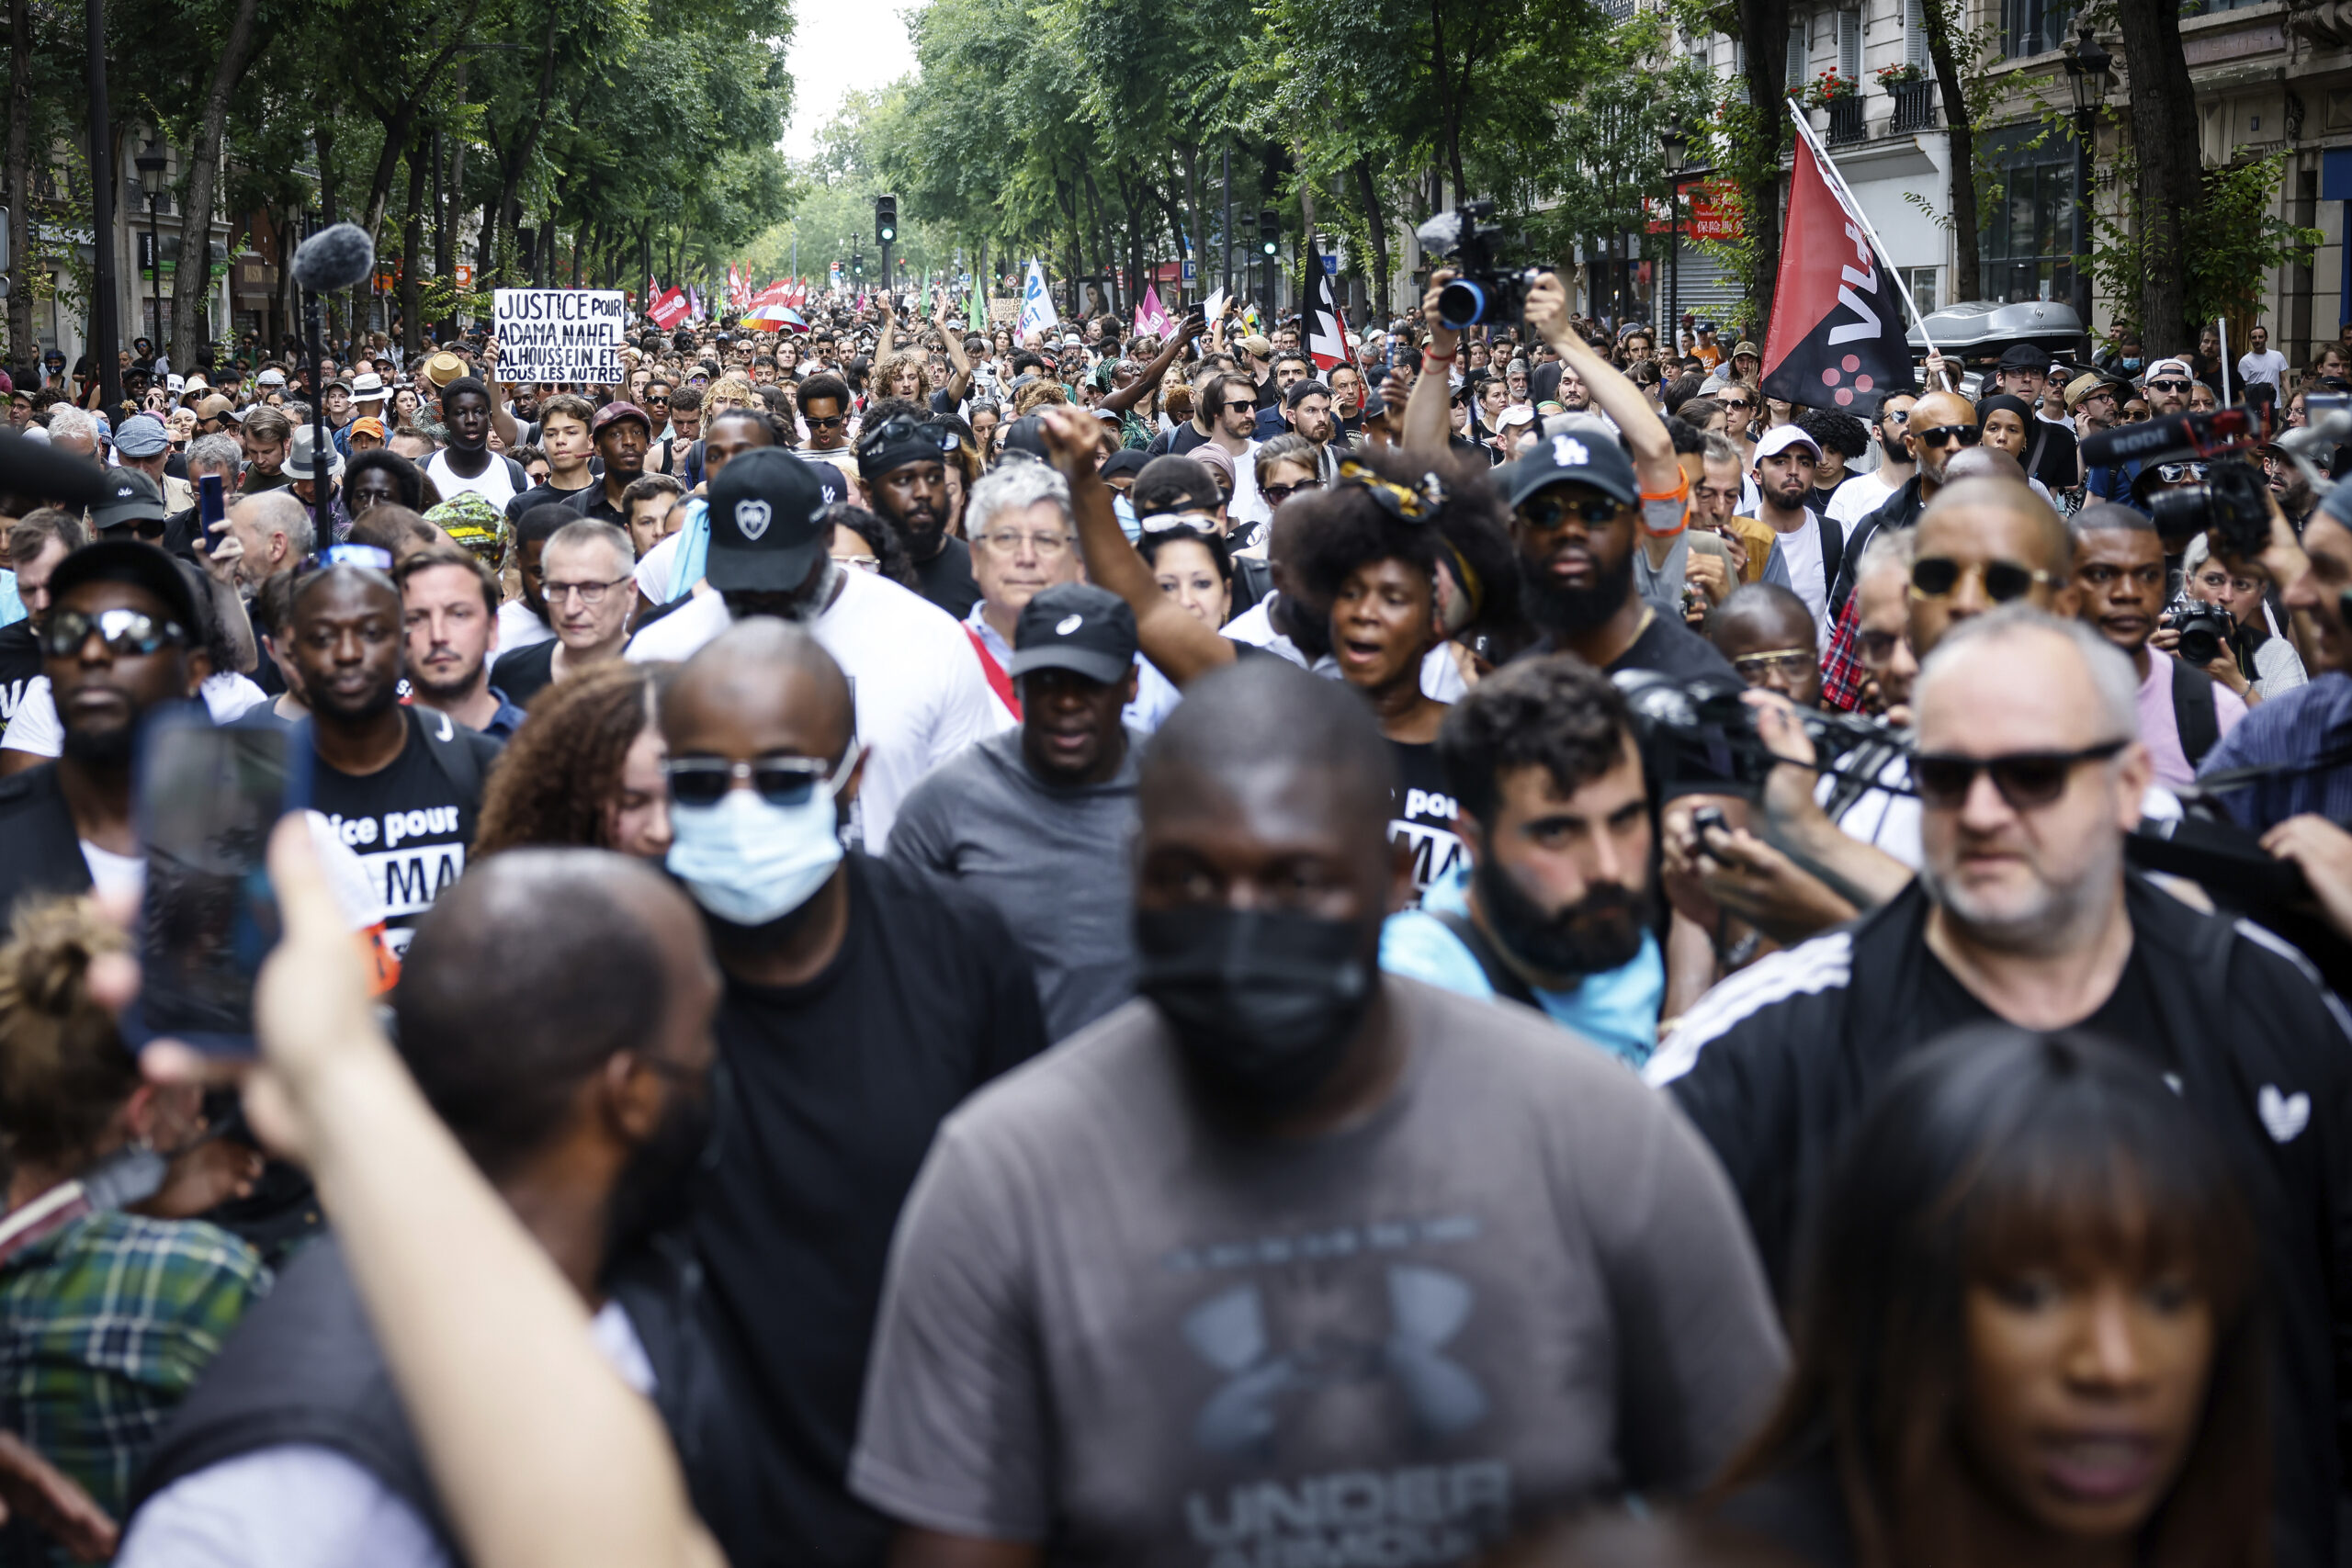 Γαλλία: Πορείες κατά της αστυνομικής βίας σε πολλές πόλεις, και στο Παρίσι παρά την απαγόρευση των αρχών